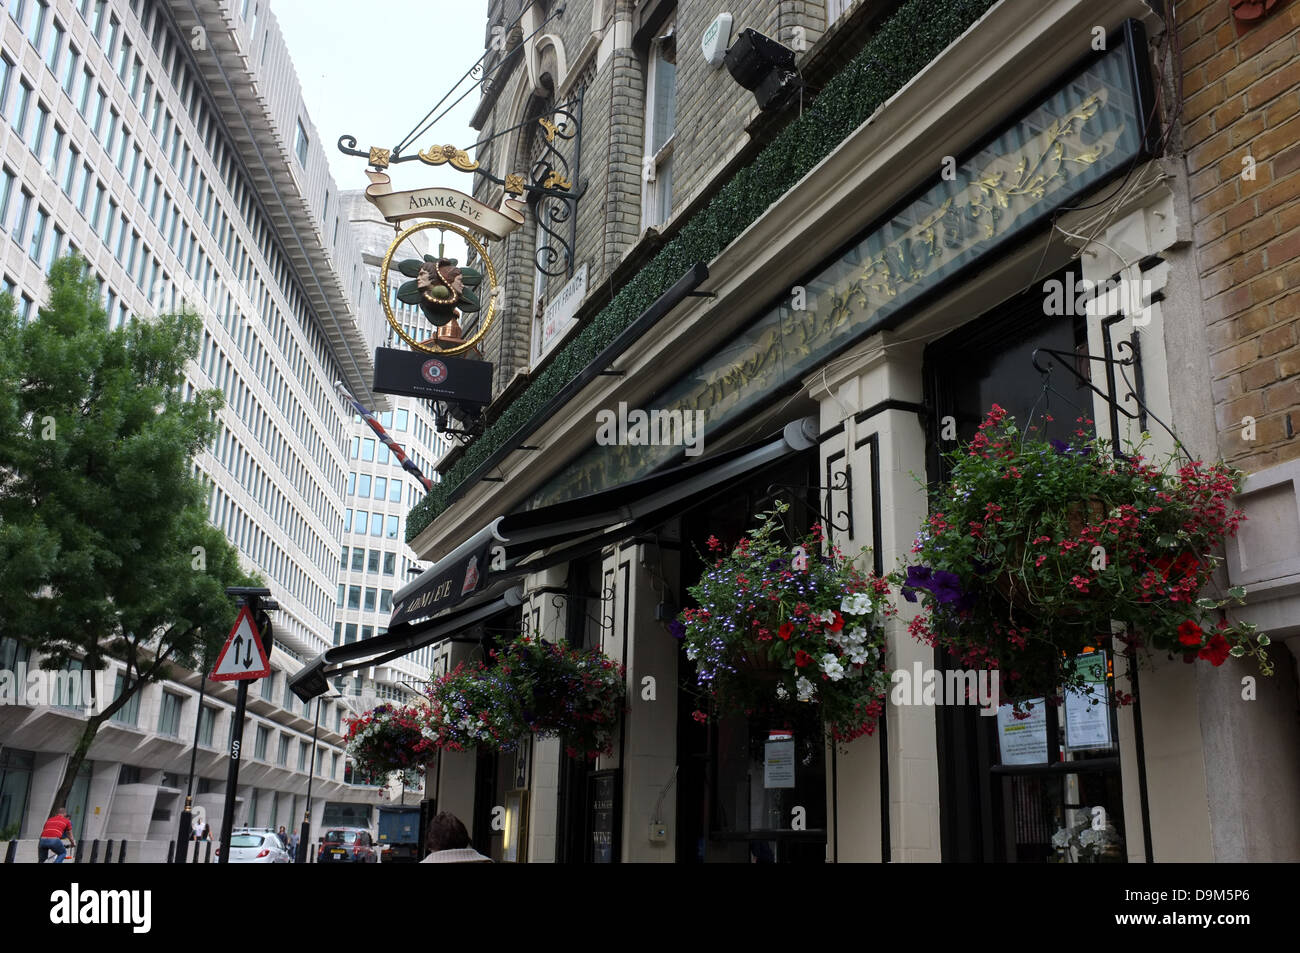 Adam et Eve tavern ville de Westminster London uk 2013 Banque D'Images